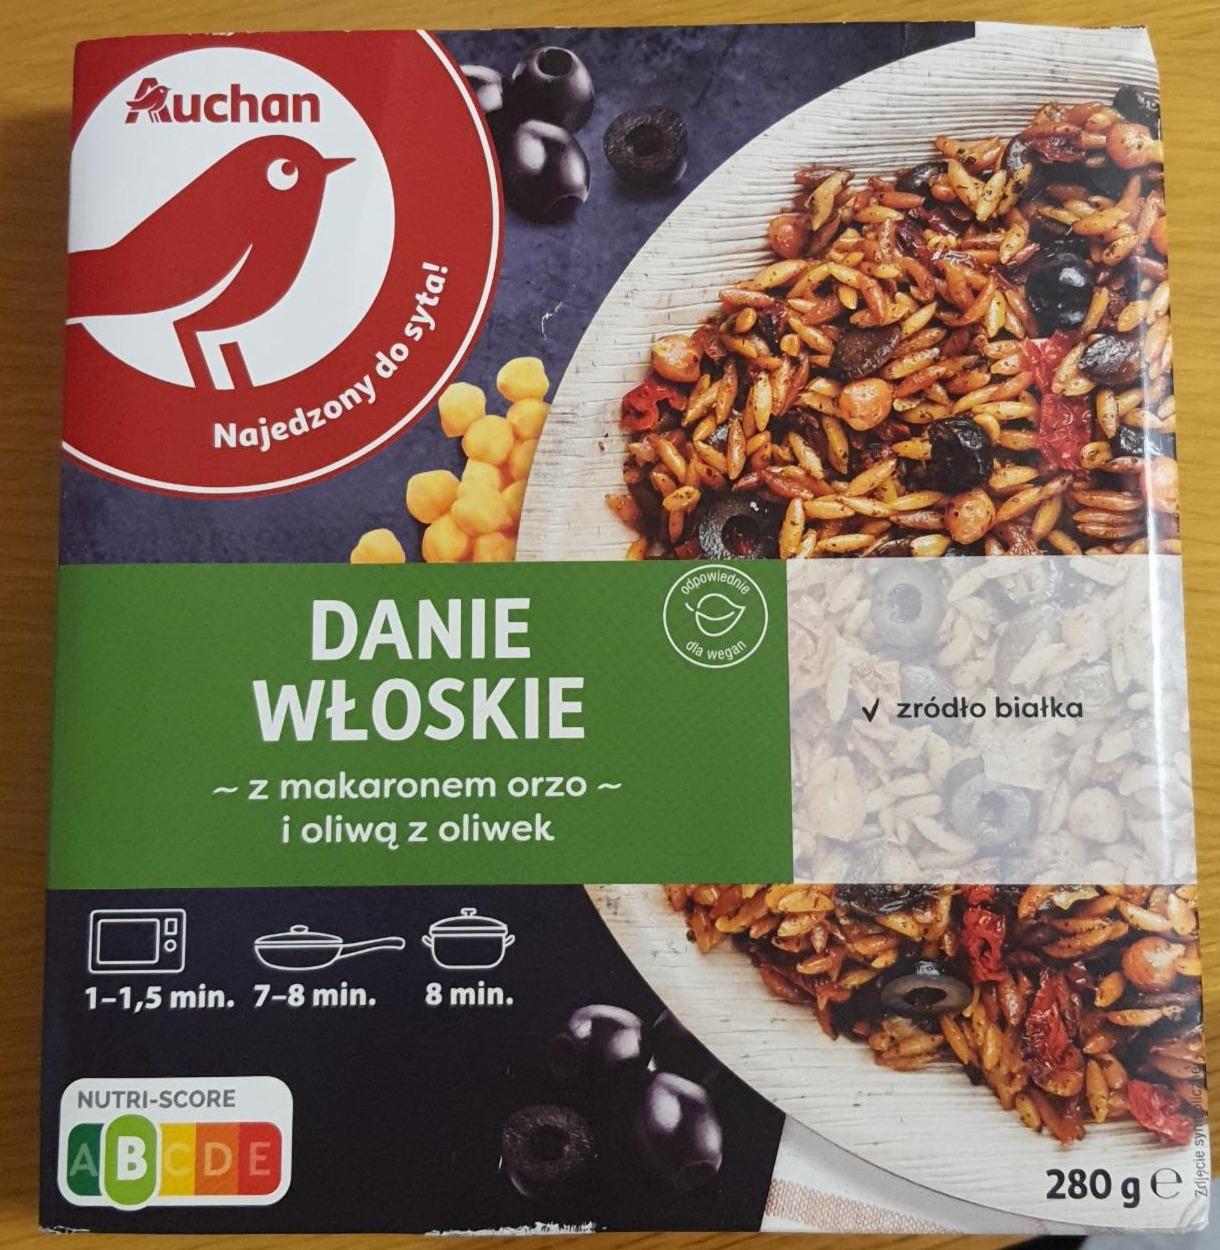 Fotografie - Danie wloskie z makaronem orzo i oliwą z oliwek Auchan